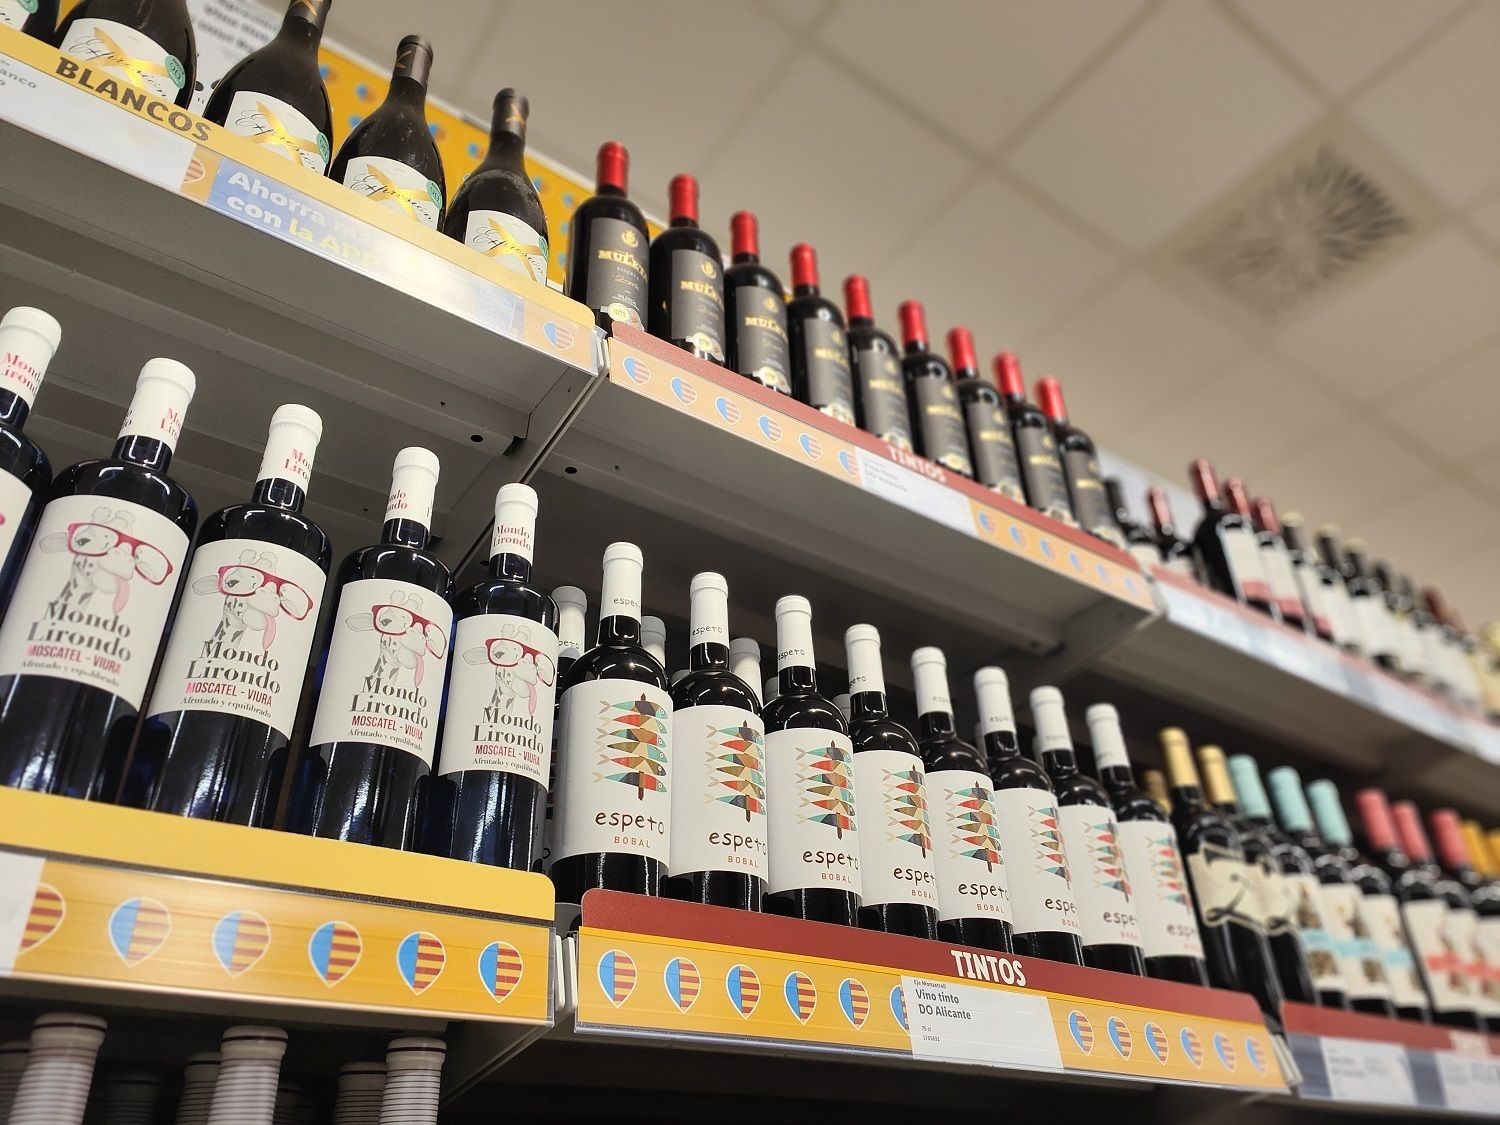 Lidl abre su bodega online: ya puedes comprar sus vinos sin salir de casa